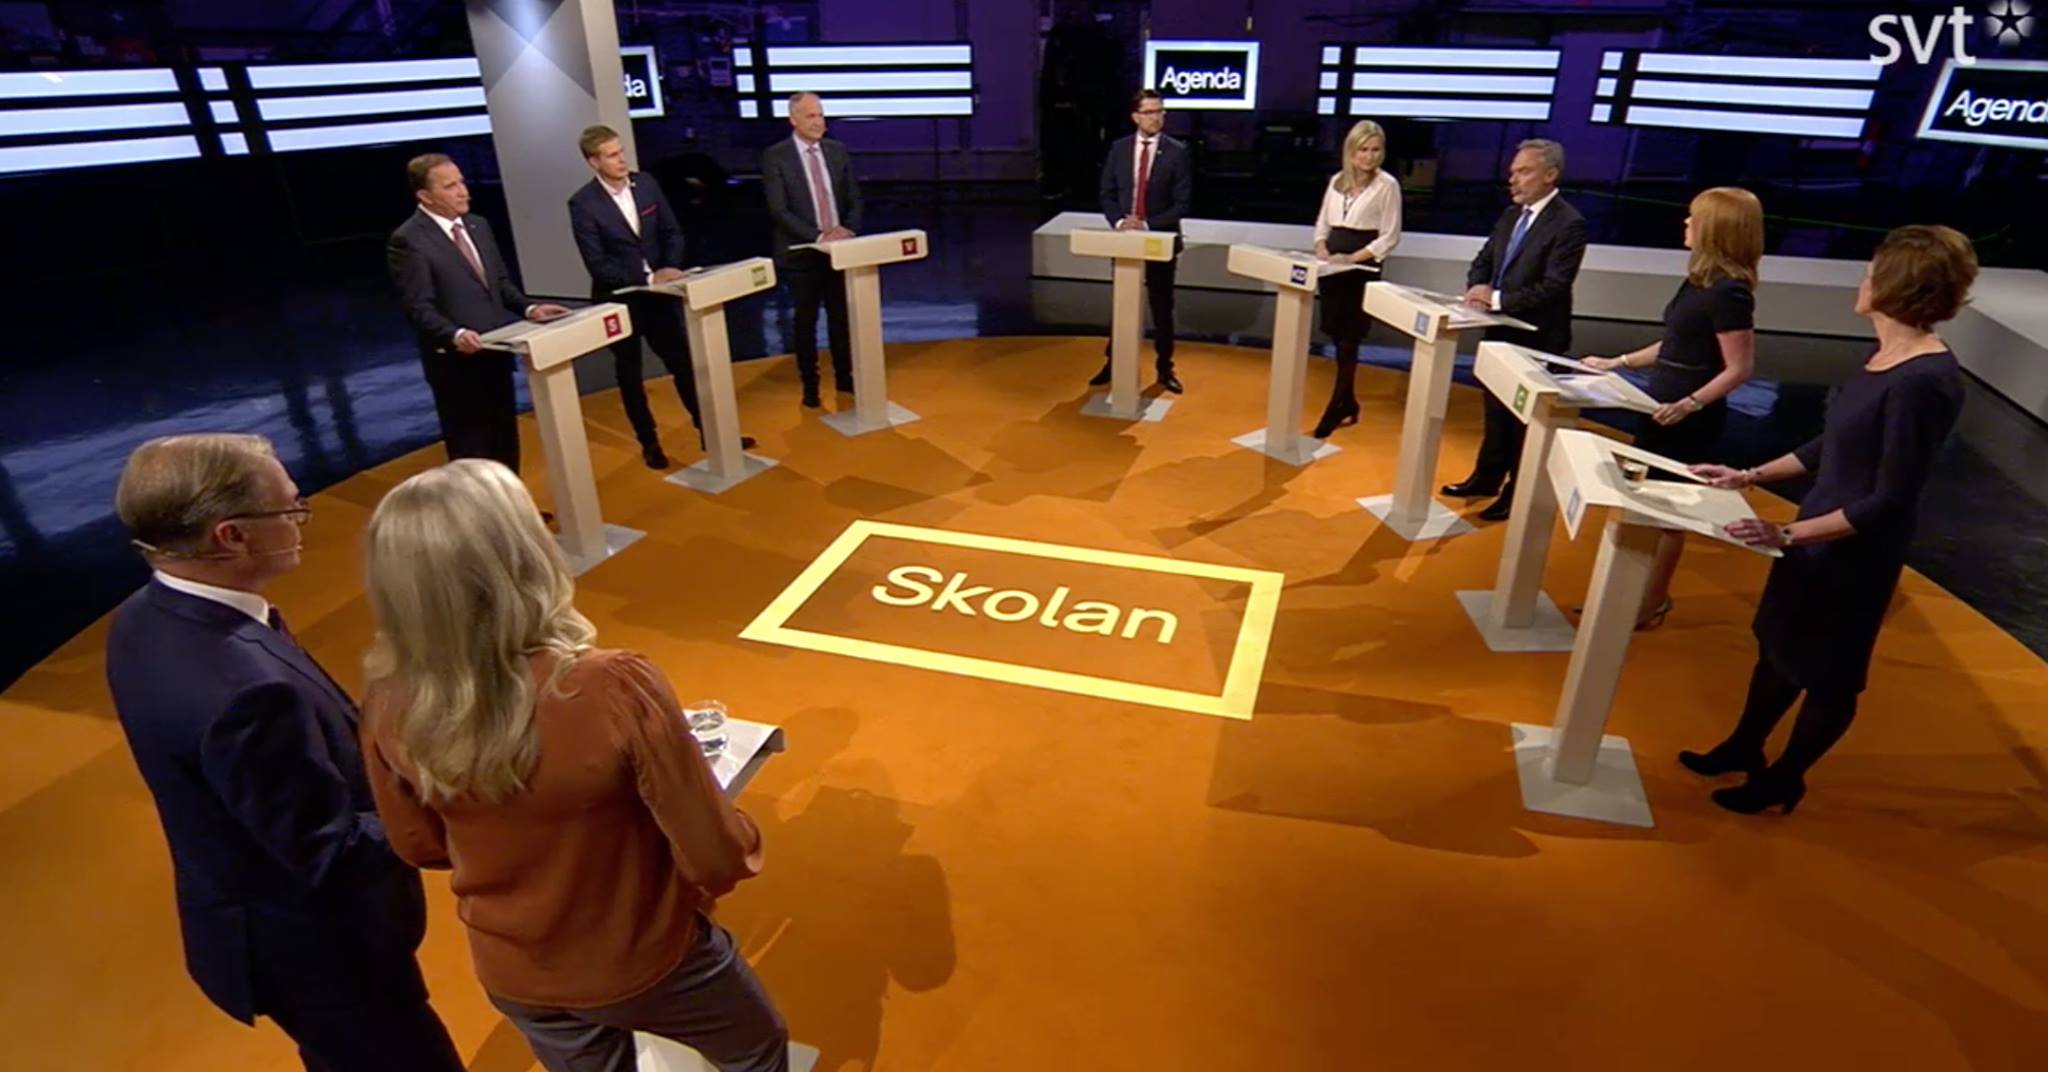 Partiledardebatt i SVT